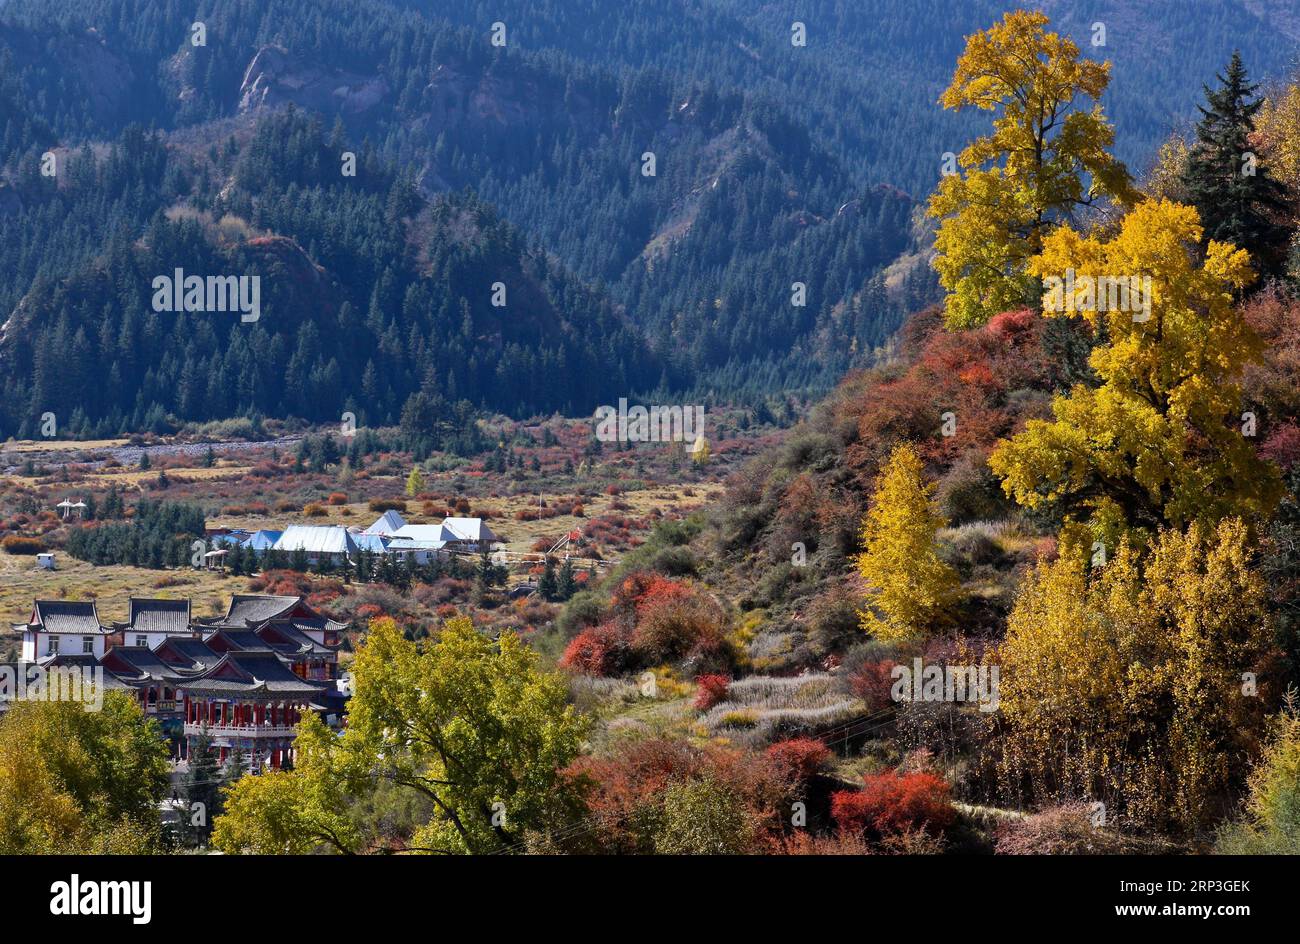 (181005) -- ZHANGYE, 5 ottobre 2018 -- foto scattata il 4 ottobre 2018 mostra lo scenario autunnale dei monti Qiliani nella cittadina tibetana di Mati nella contea autonoma di Sunan Yugur, provincia del Gansu della Cina nord-occidentale. ) (Hxy) CHINA-ZHANGYE-QILIAN MOUNTAINS-LANDSCAPE (CN) WangxJiang PUBLICATIONxNOTxINxCHN Foto Stock